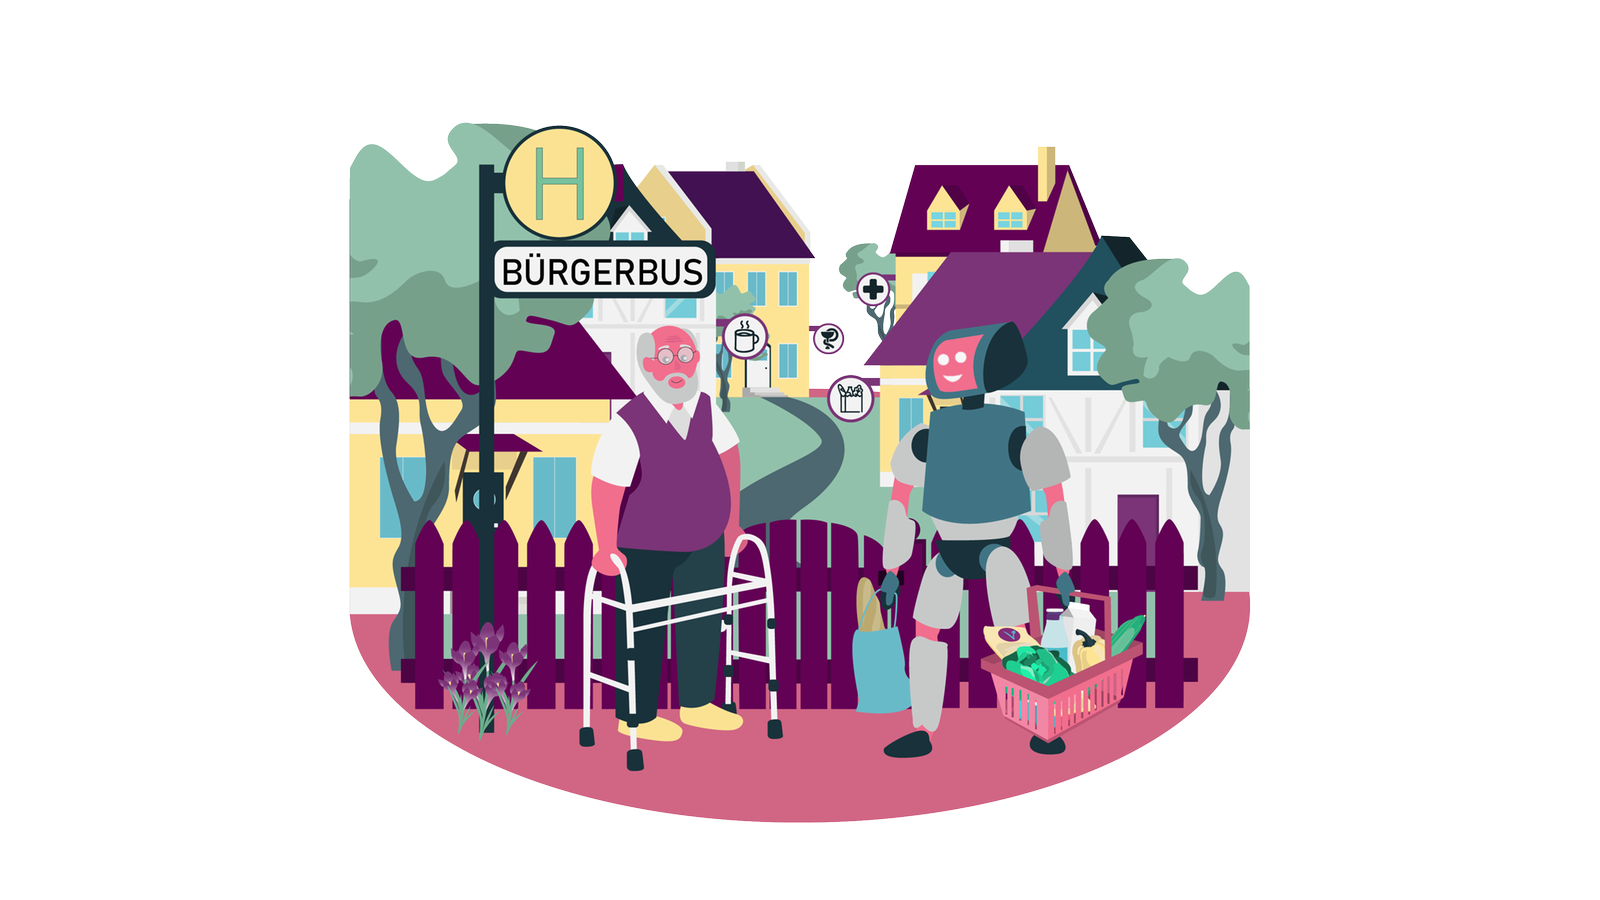 Die Illustration zeig einen älteren Mann mit Gehhilfe, neben ihm steht ein Roboter mit Einkaufstüten und im Hintergrund sieht man ein Dorf mit Cafés, Apotheken und Einkaufsmöglichkeiten.